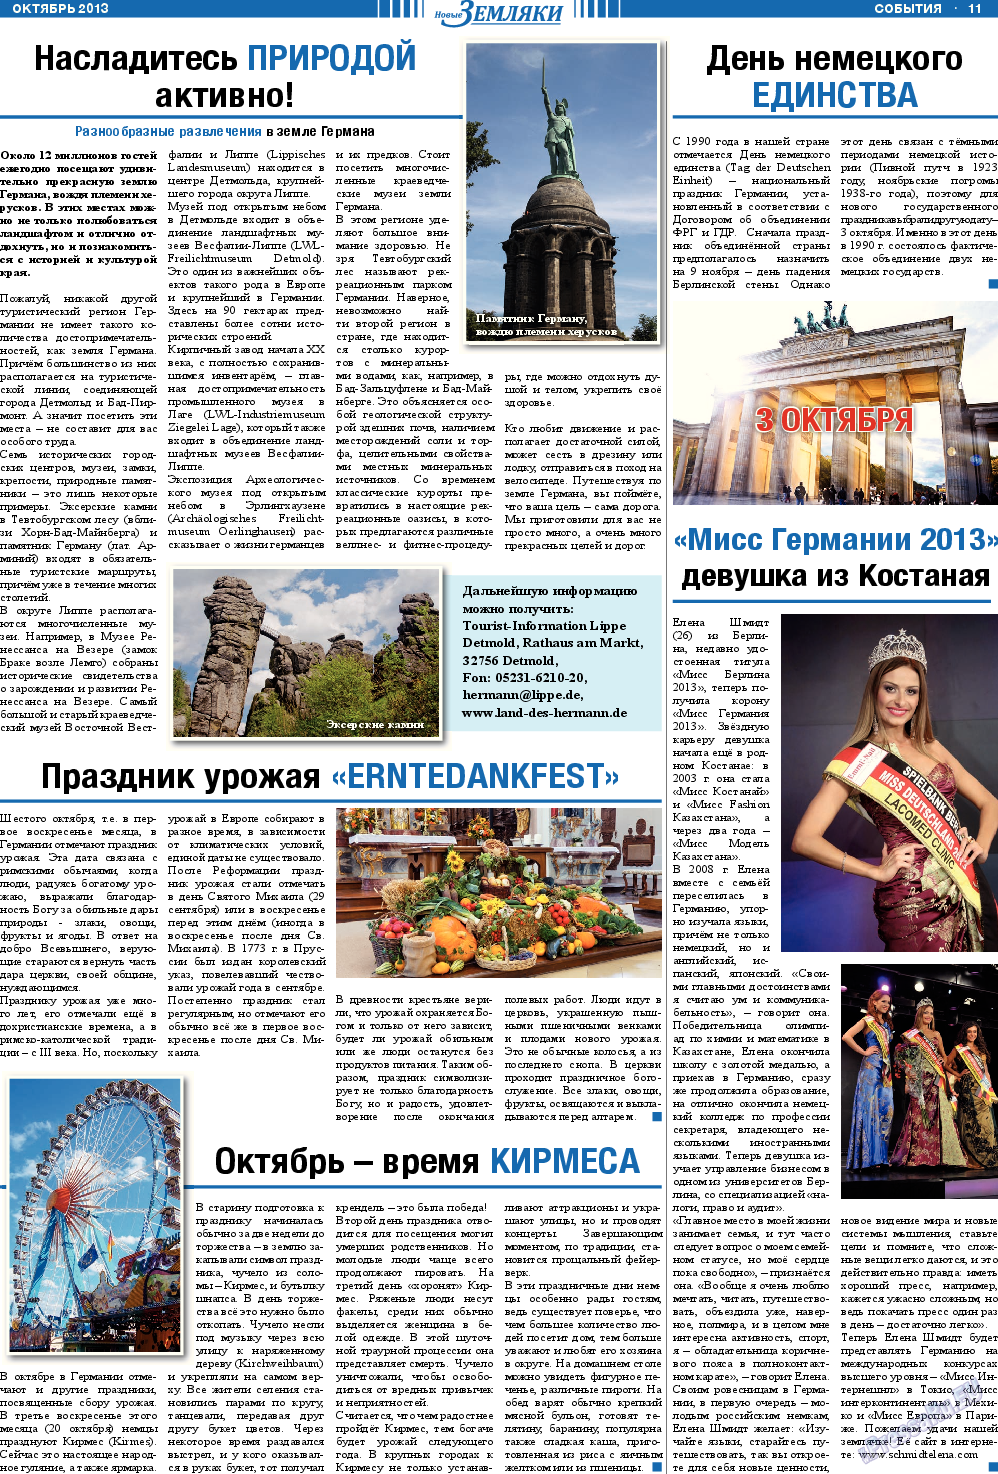 Новые Земляки, газета. 2013 №10 стр.11